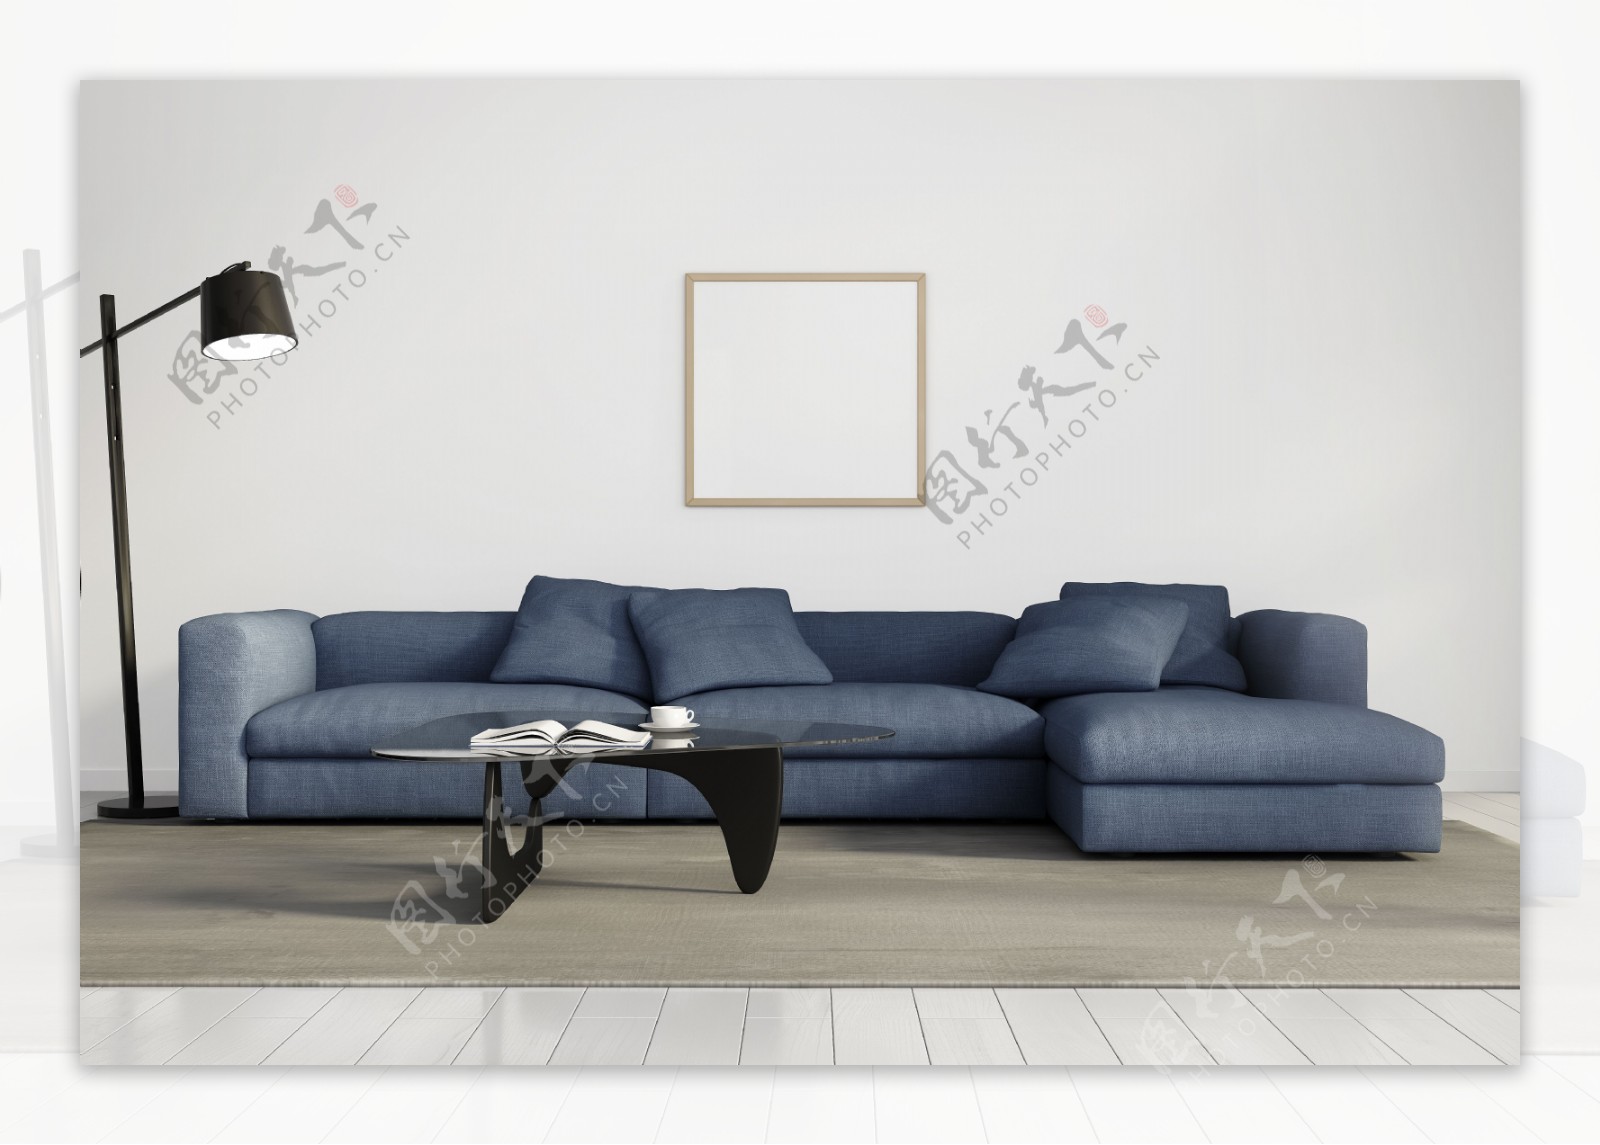 时尚大气的沙发设计图片